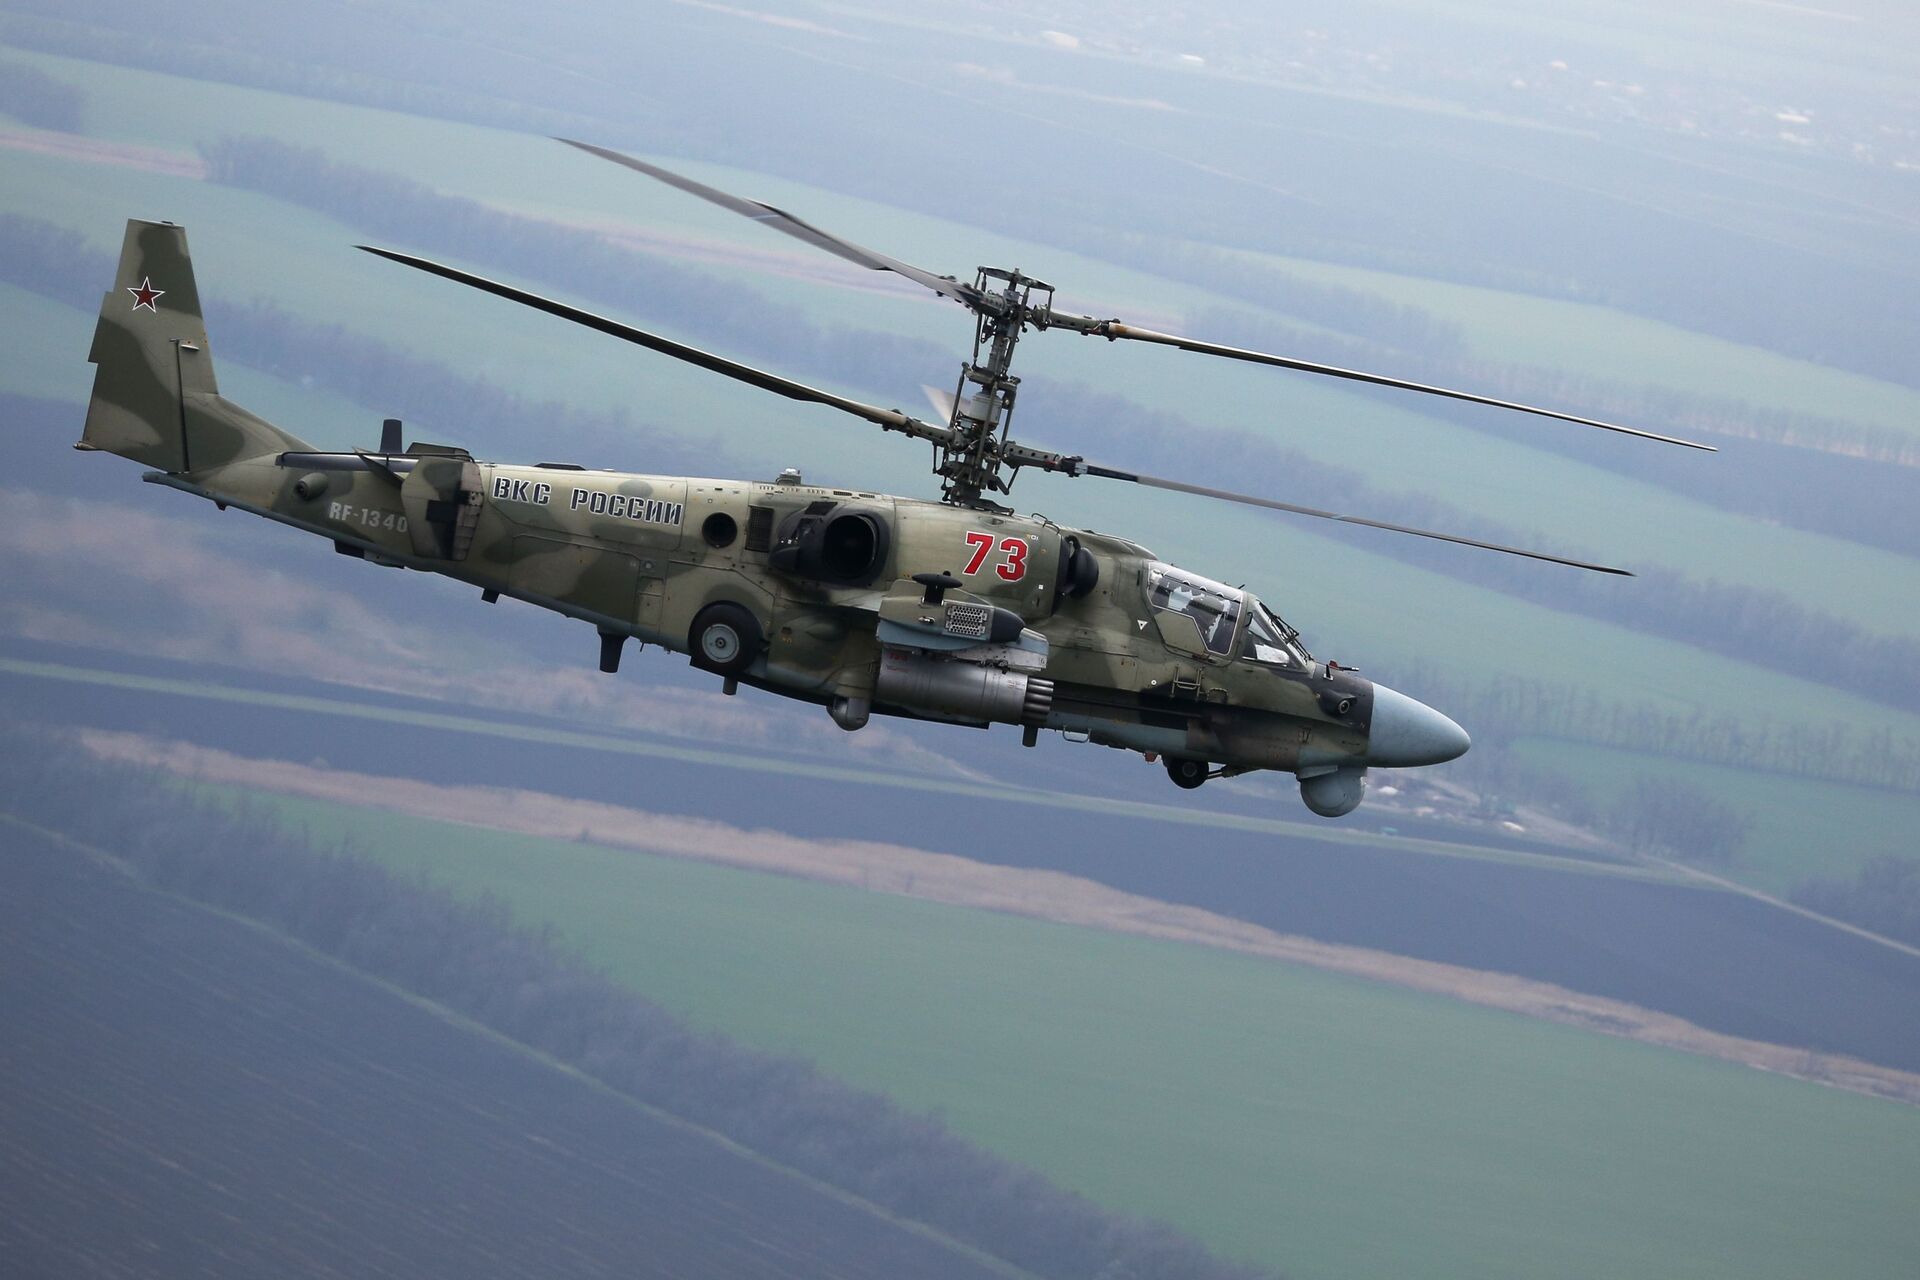 Helicópteros russos de transporte Mi-8 serão dotados de 'proteção balística', diz desenvolvedor - Sputnik Brasil, 1920, 20.05.2021